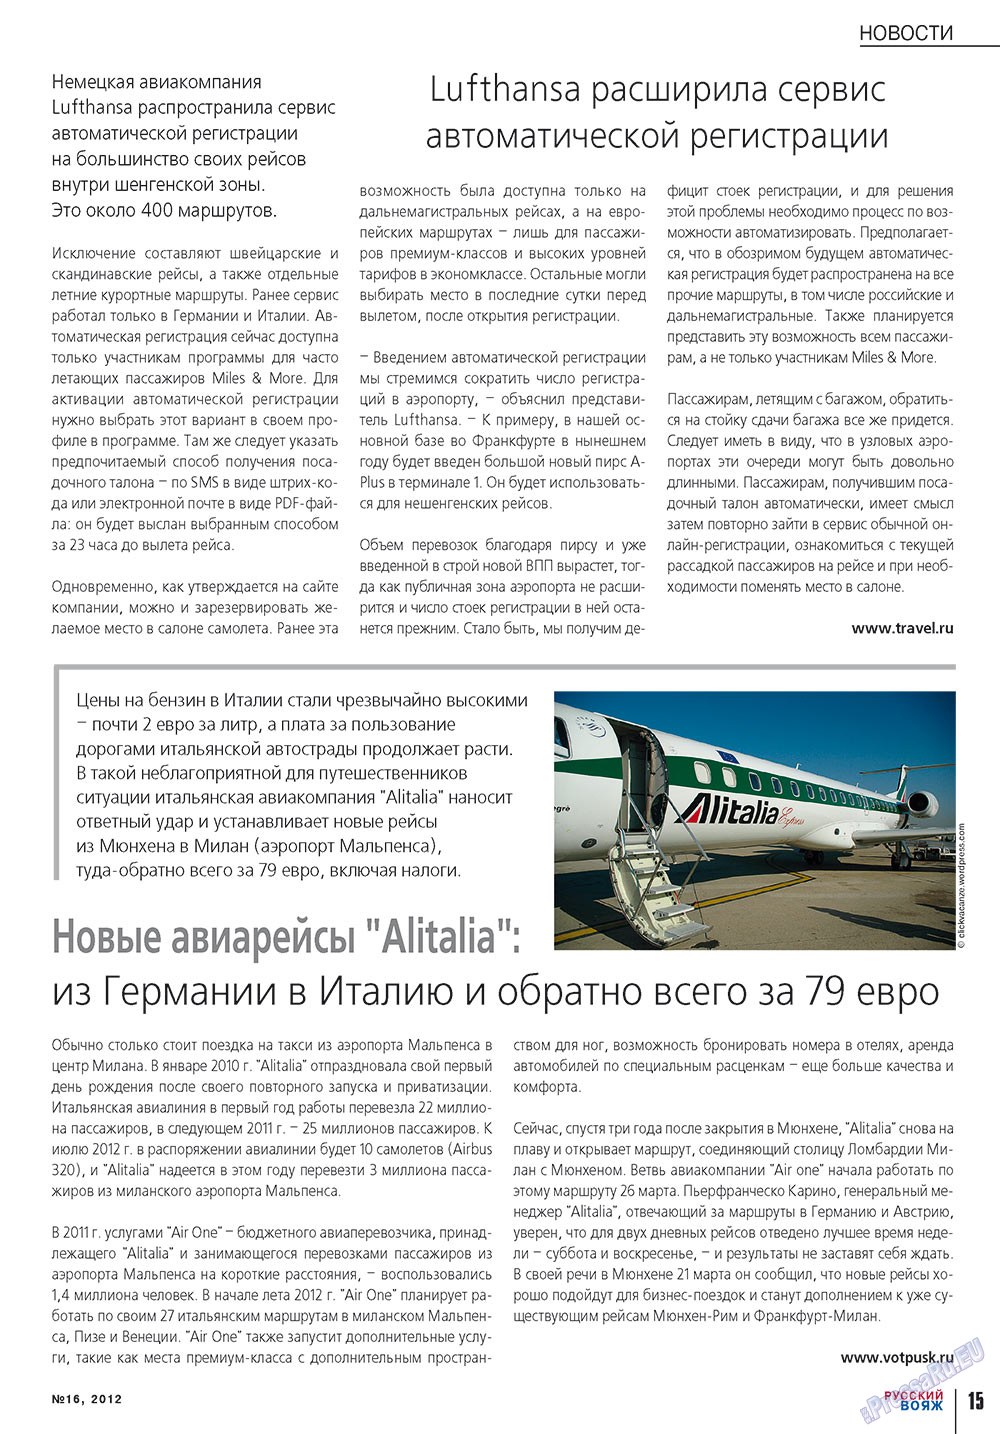 Русский вояж, журнал. 2012 №16 стр.15